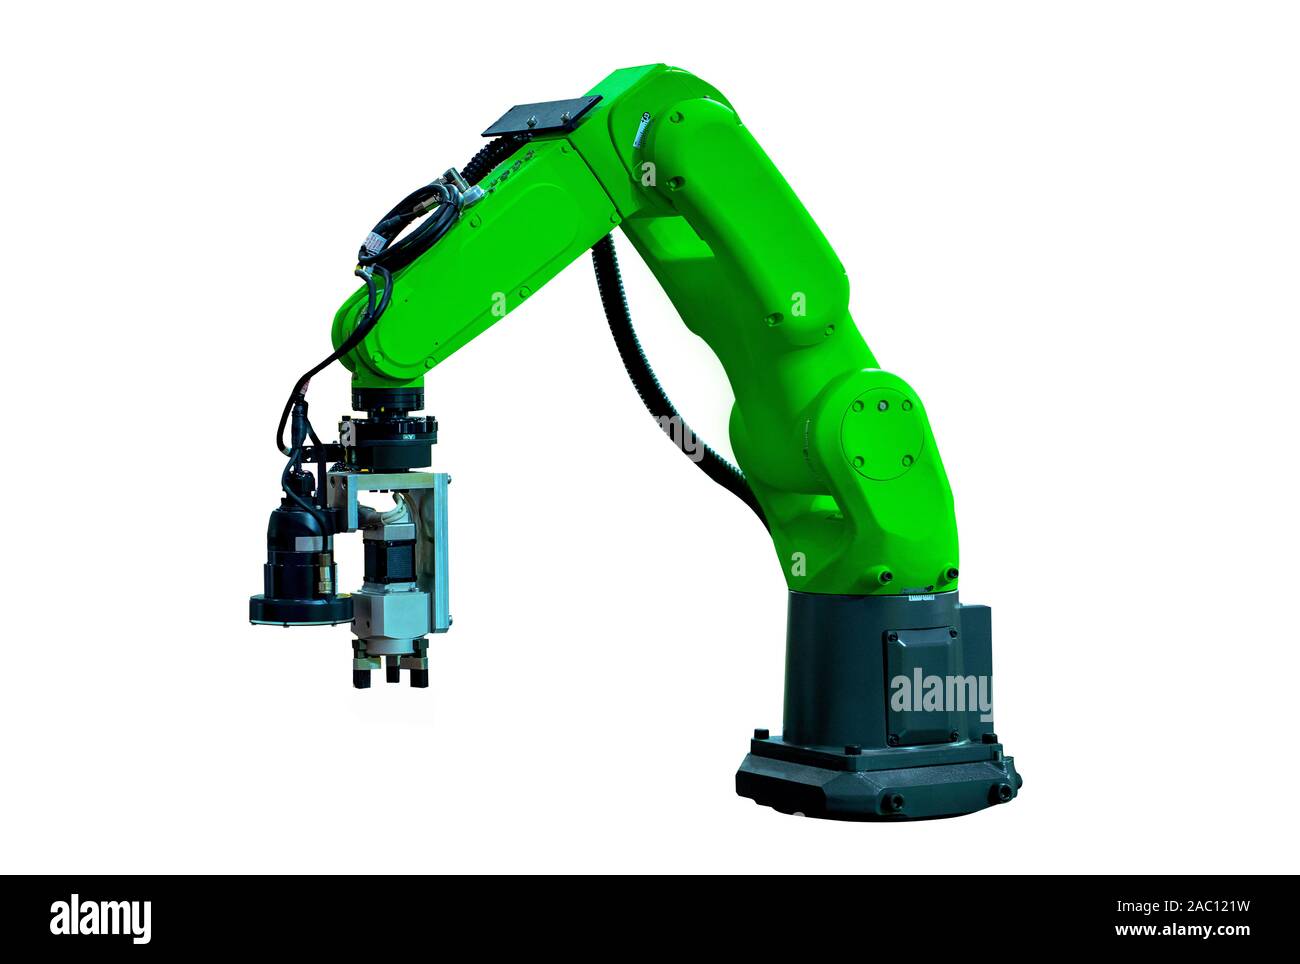 Isolierte Roboterarm Maschine für Industrie Herstellung Betrieb auf weißem Hintergrund. Stockfoto